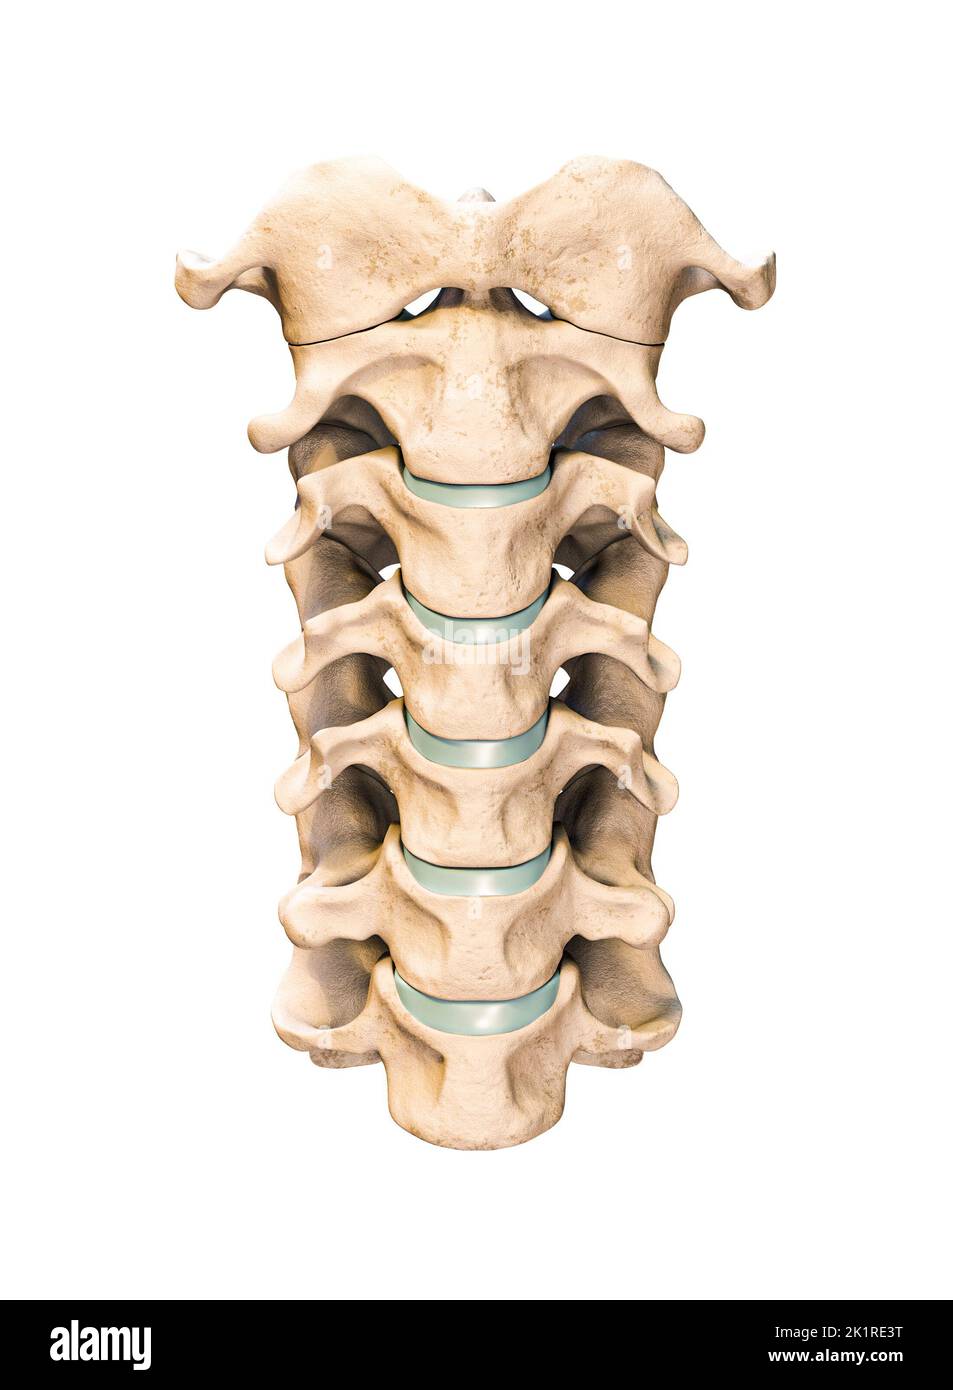 Vista anterior o frontal de las siete vértebras cervicales humanas aisladas sobre fondo blanco 3D ilustración. Anatomía, osteología, medicina en blanco Foto de stock